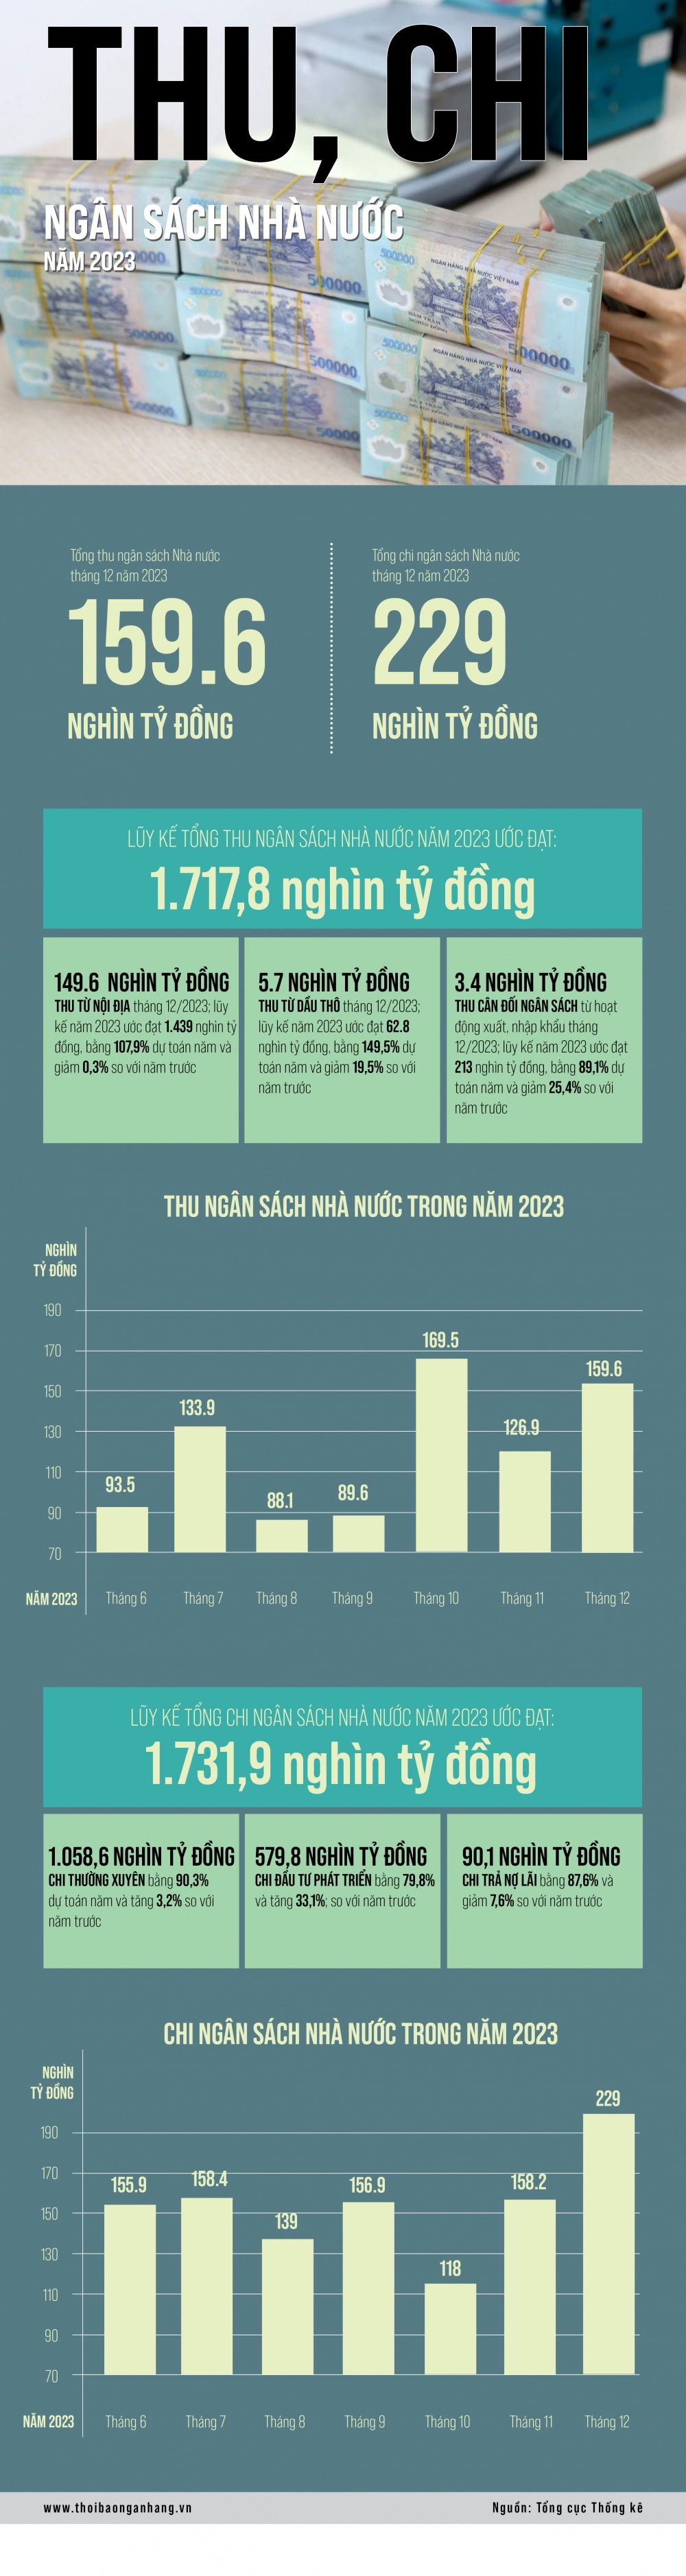 [Infographic] Thu chi ngân sách Nhà nước năm 2023